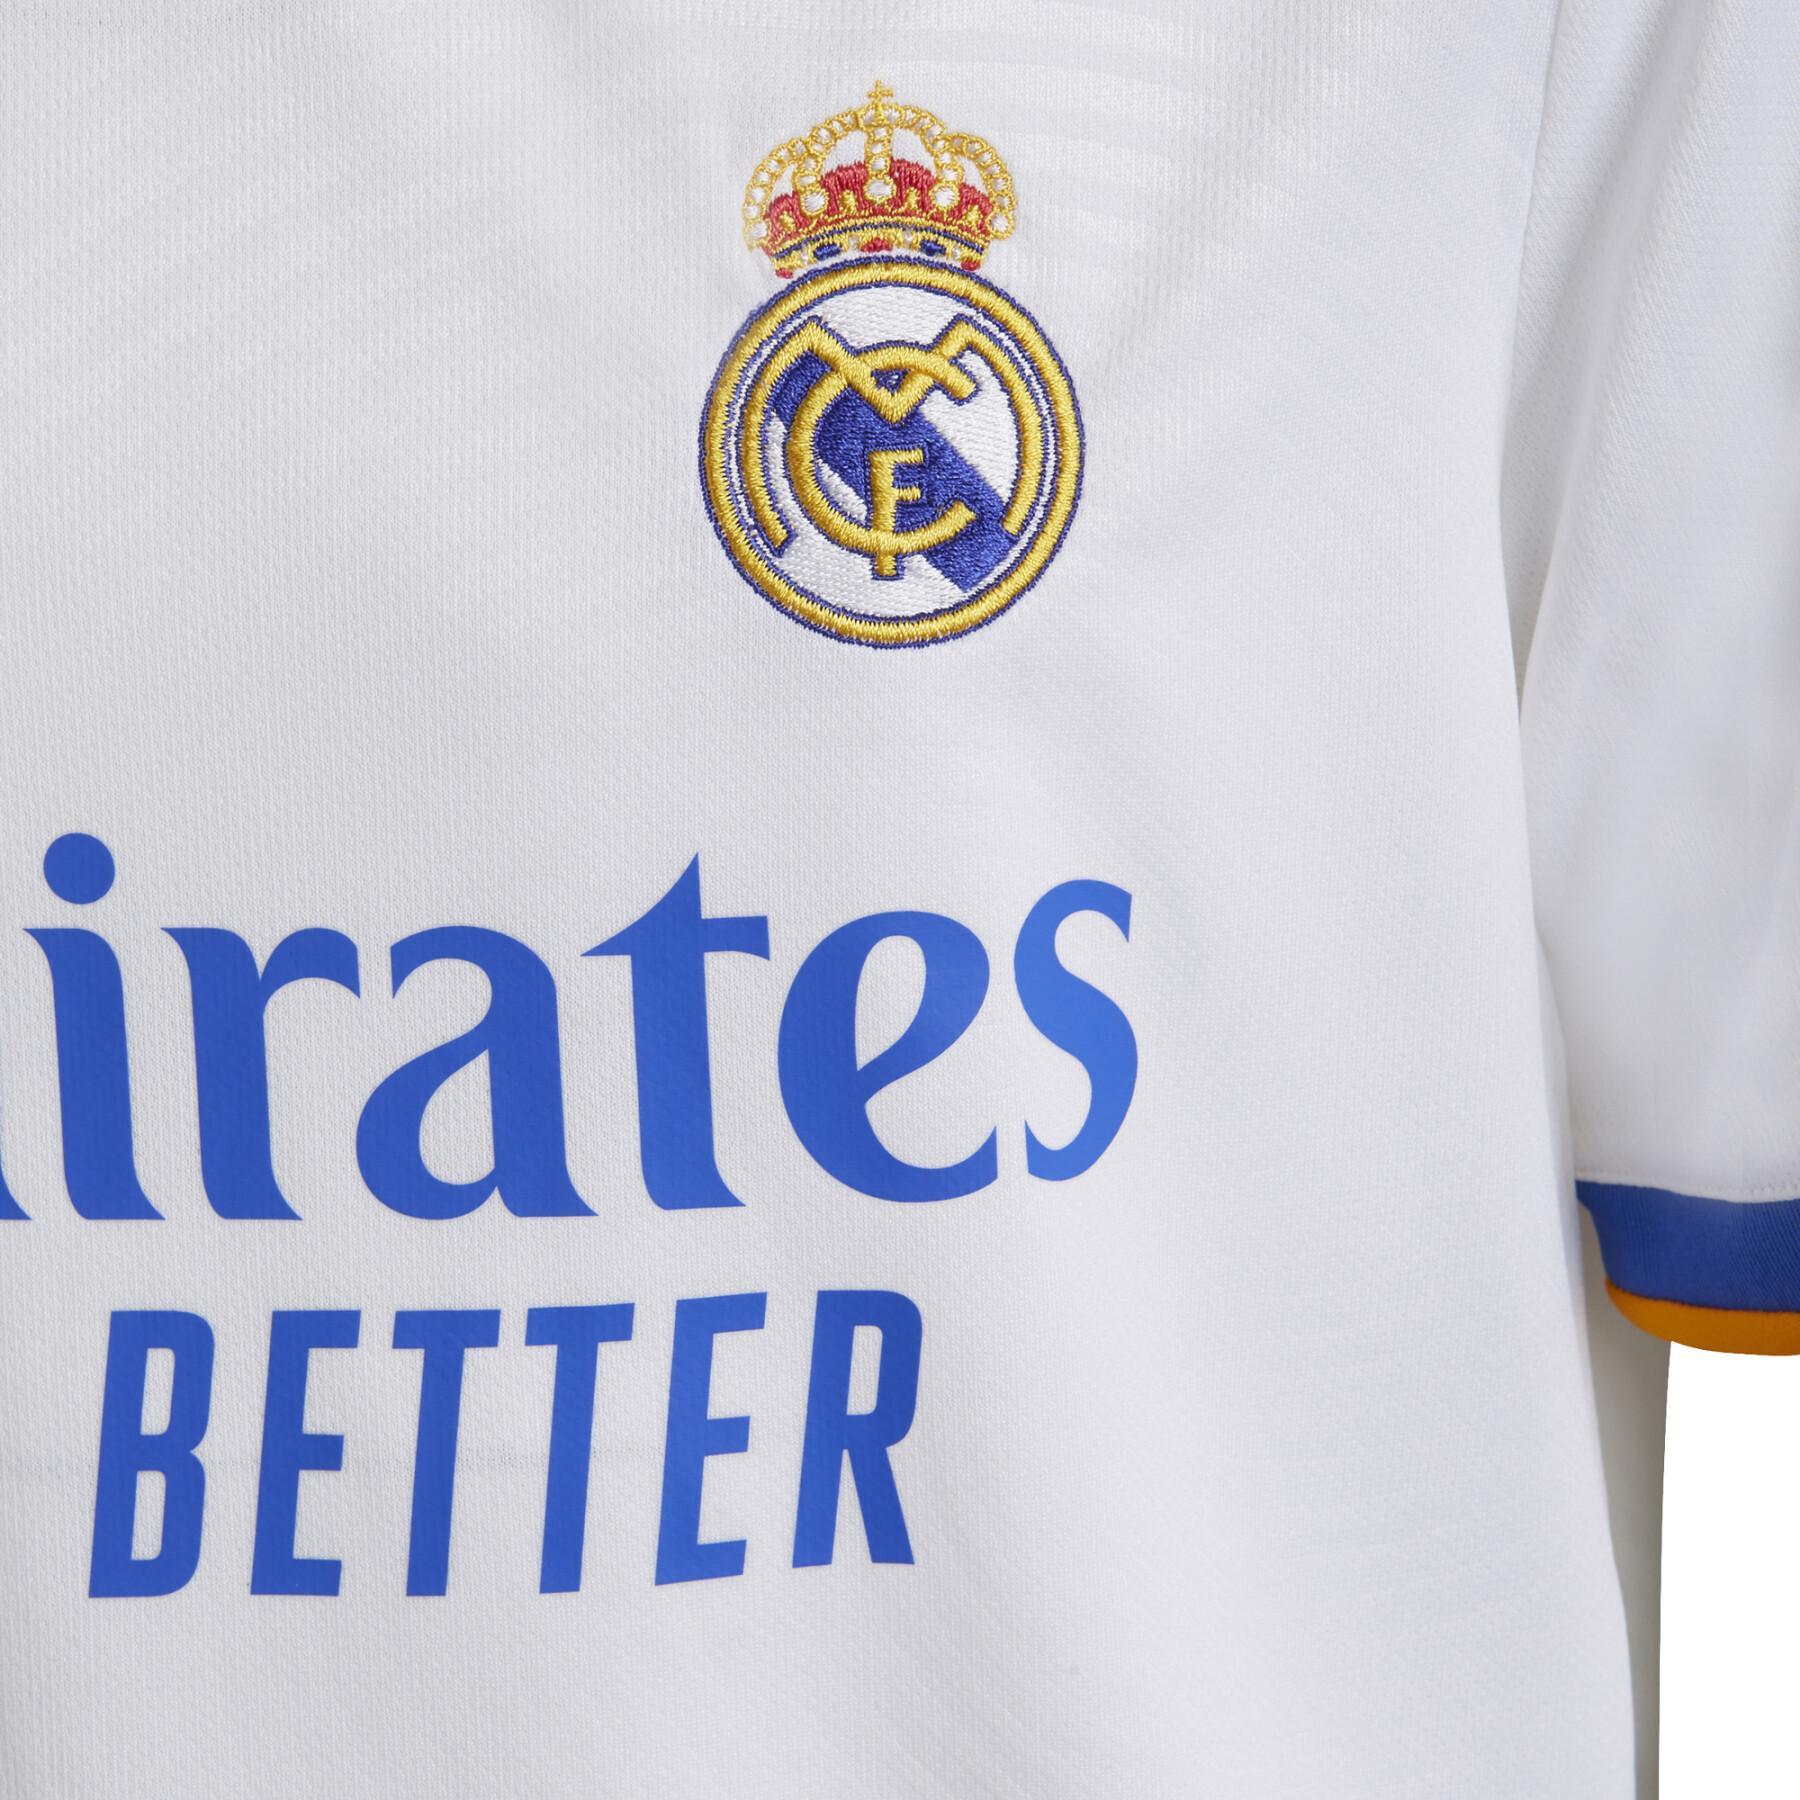 Mini Kit domicile Real Madrid 2021/22